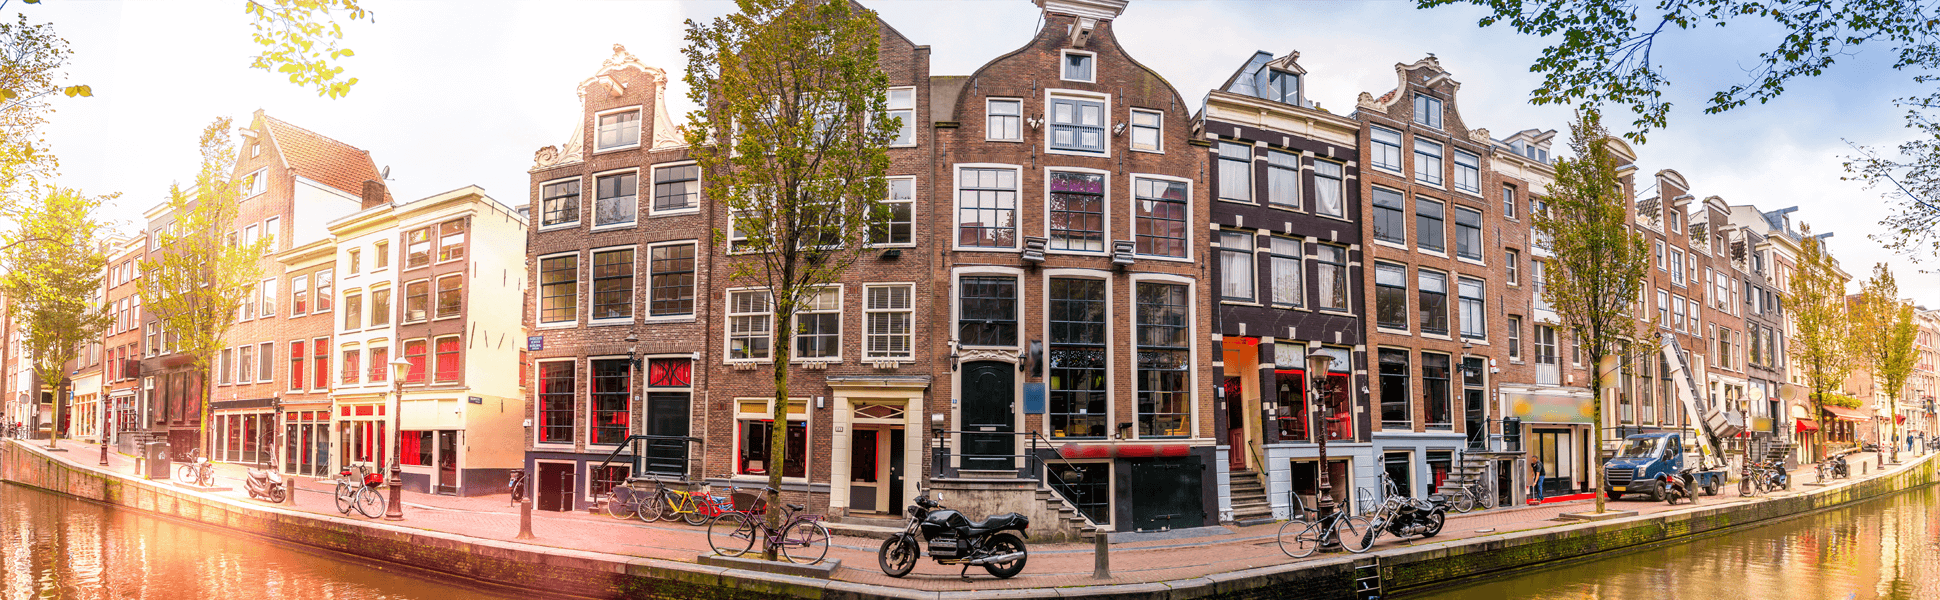 Holandia zwiedzanie – co zobaczyć, kiedy mamy wolny od pracy weekend